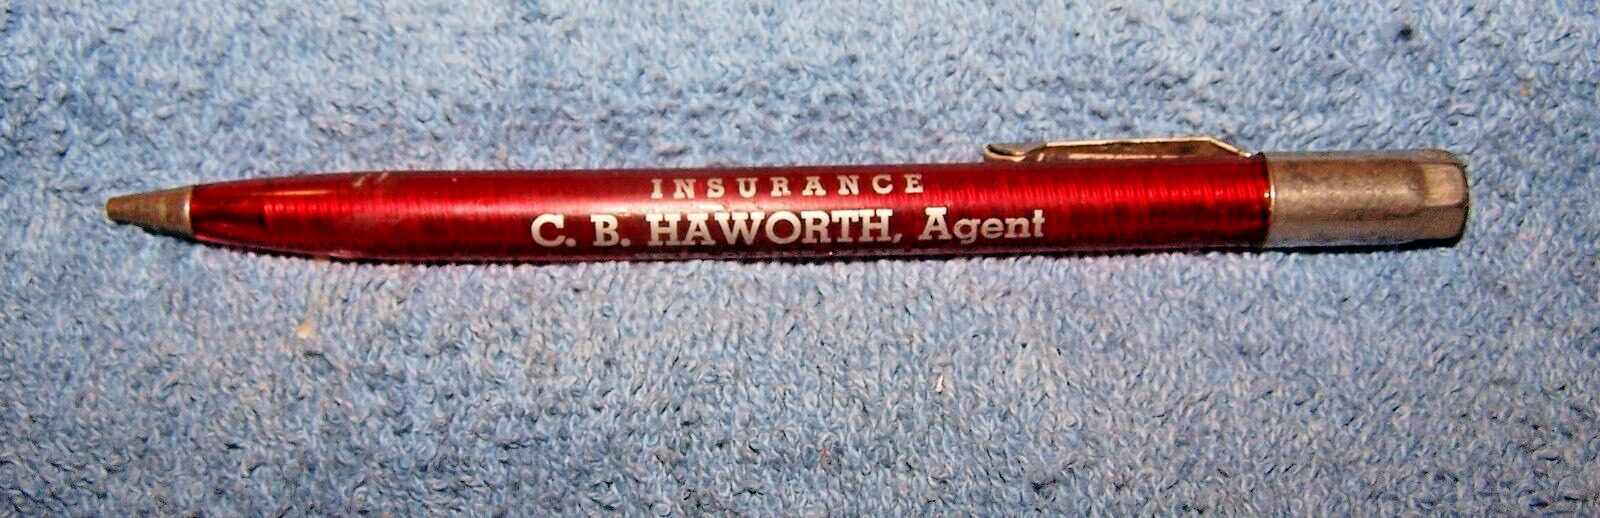 Vintage  Scripto-C.B. Haworth Insurance-Belle Plaine Mechanical Pencil-Lot 71